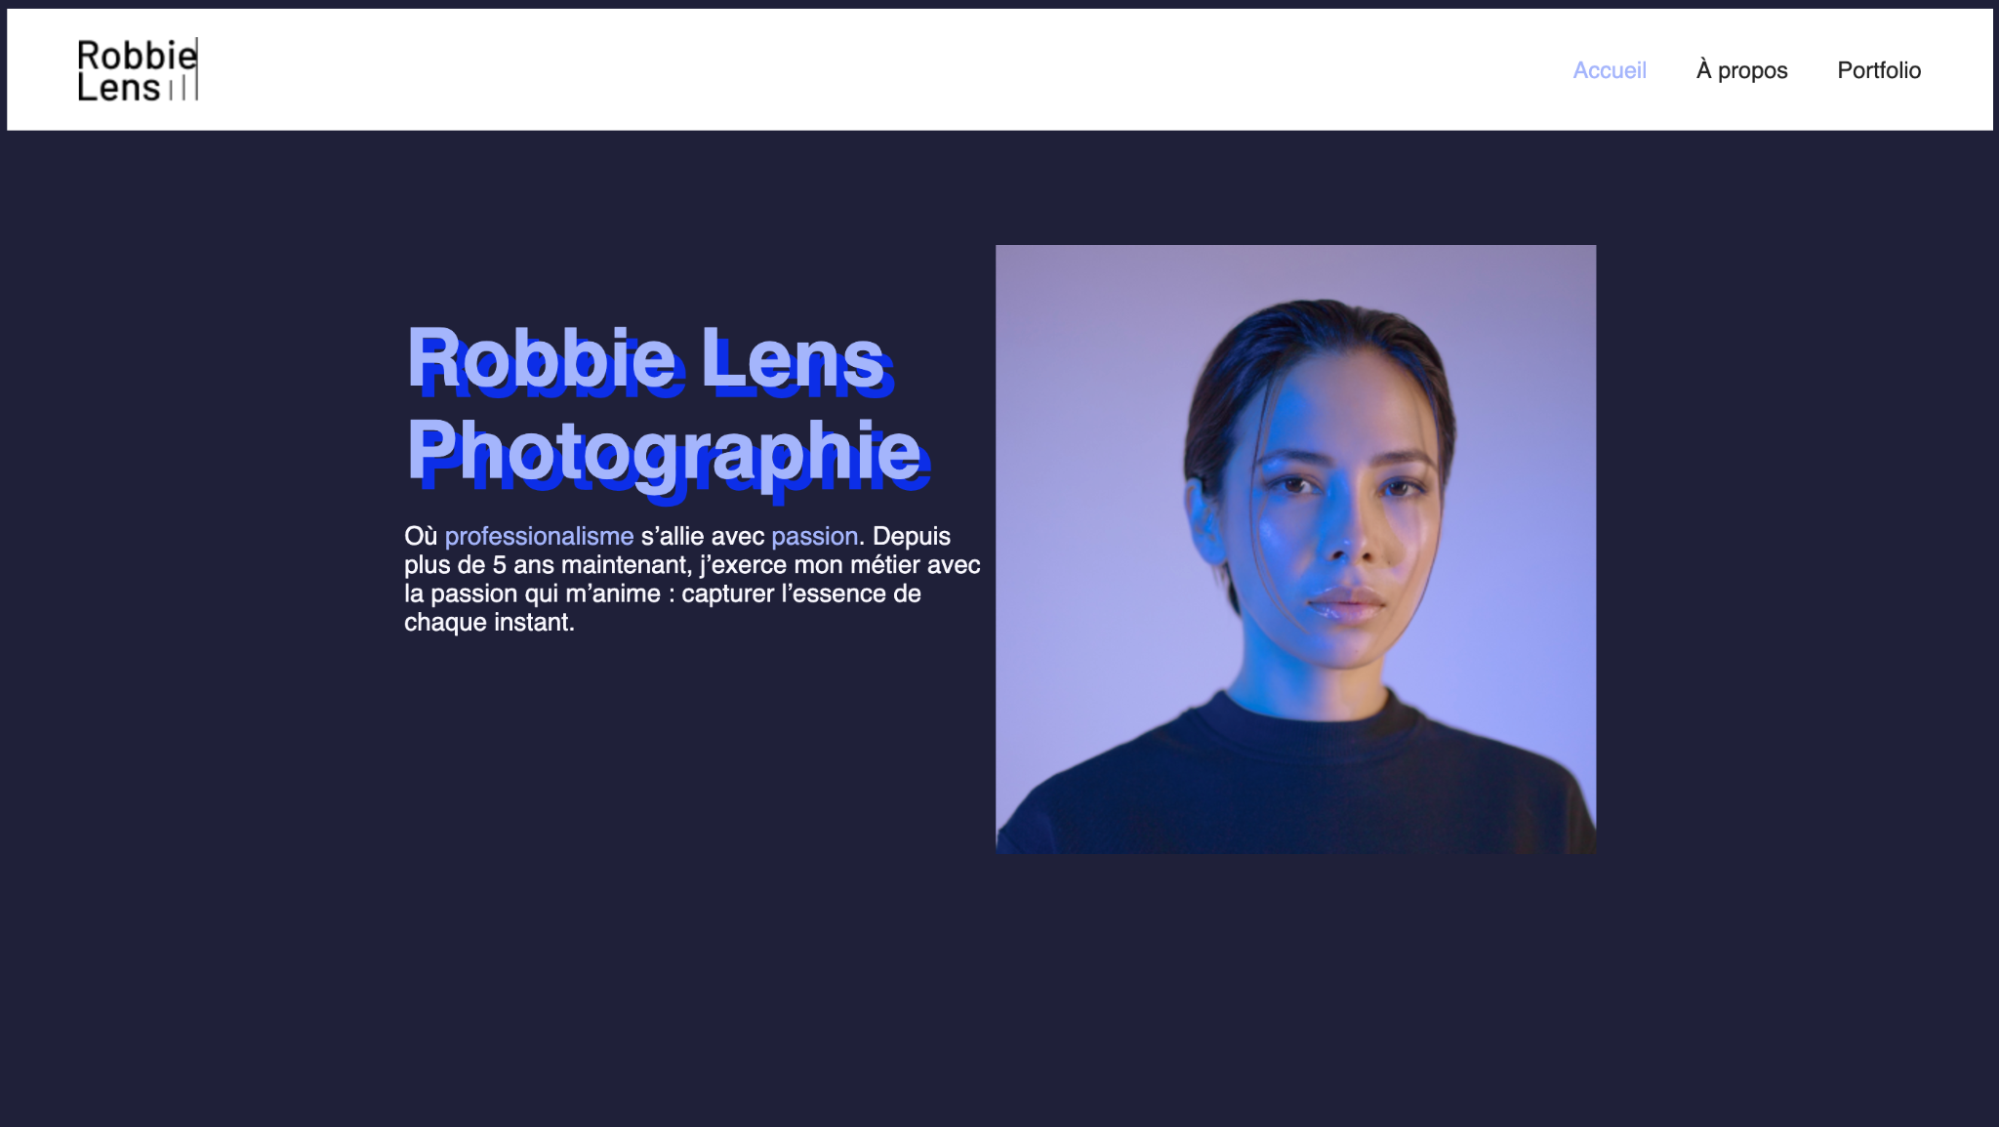 On reprend le visuel de la page web de Robbie Lens. Mais le titre